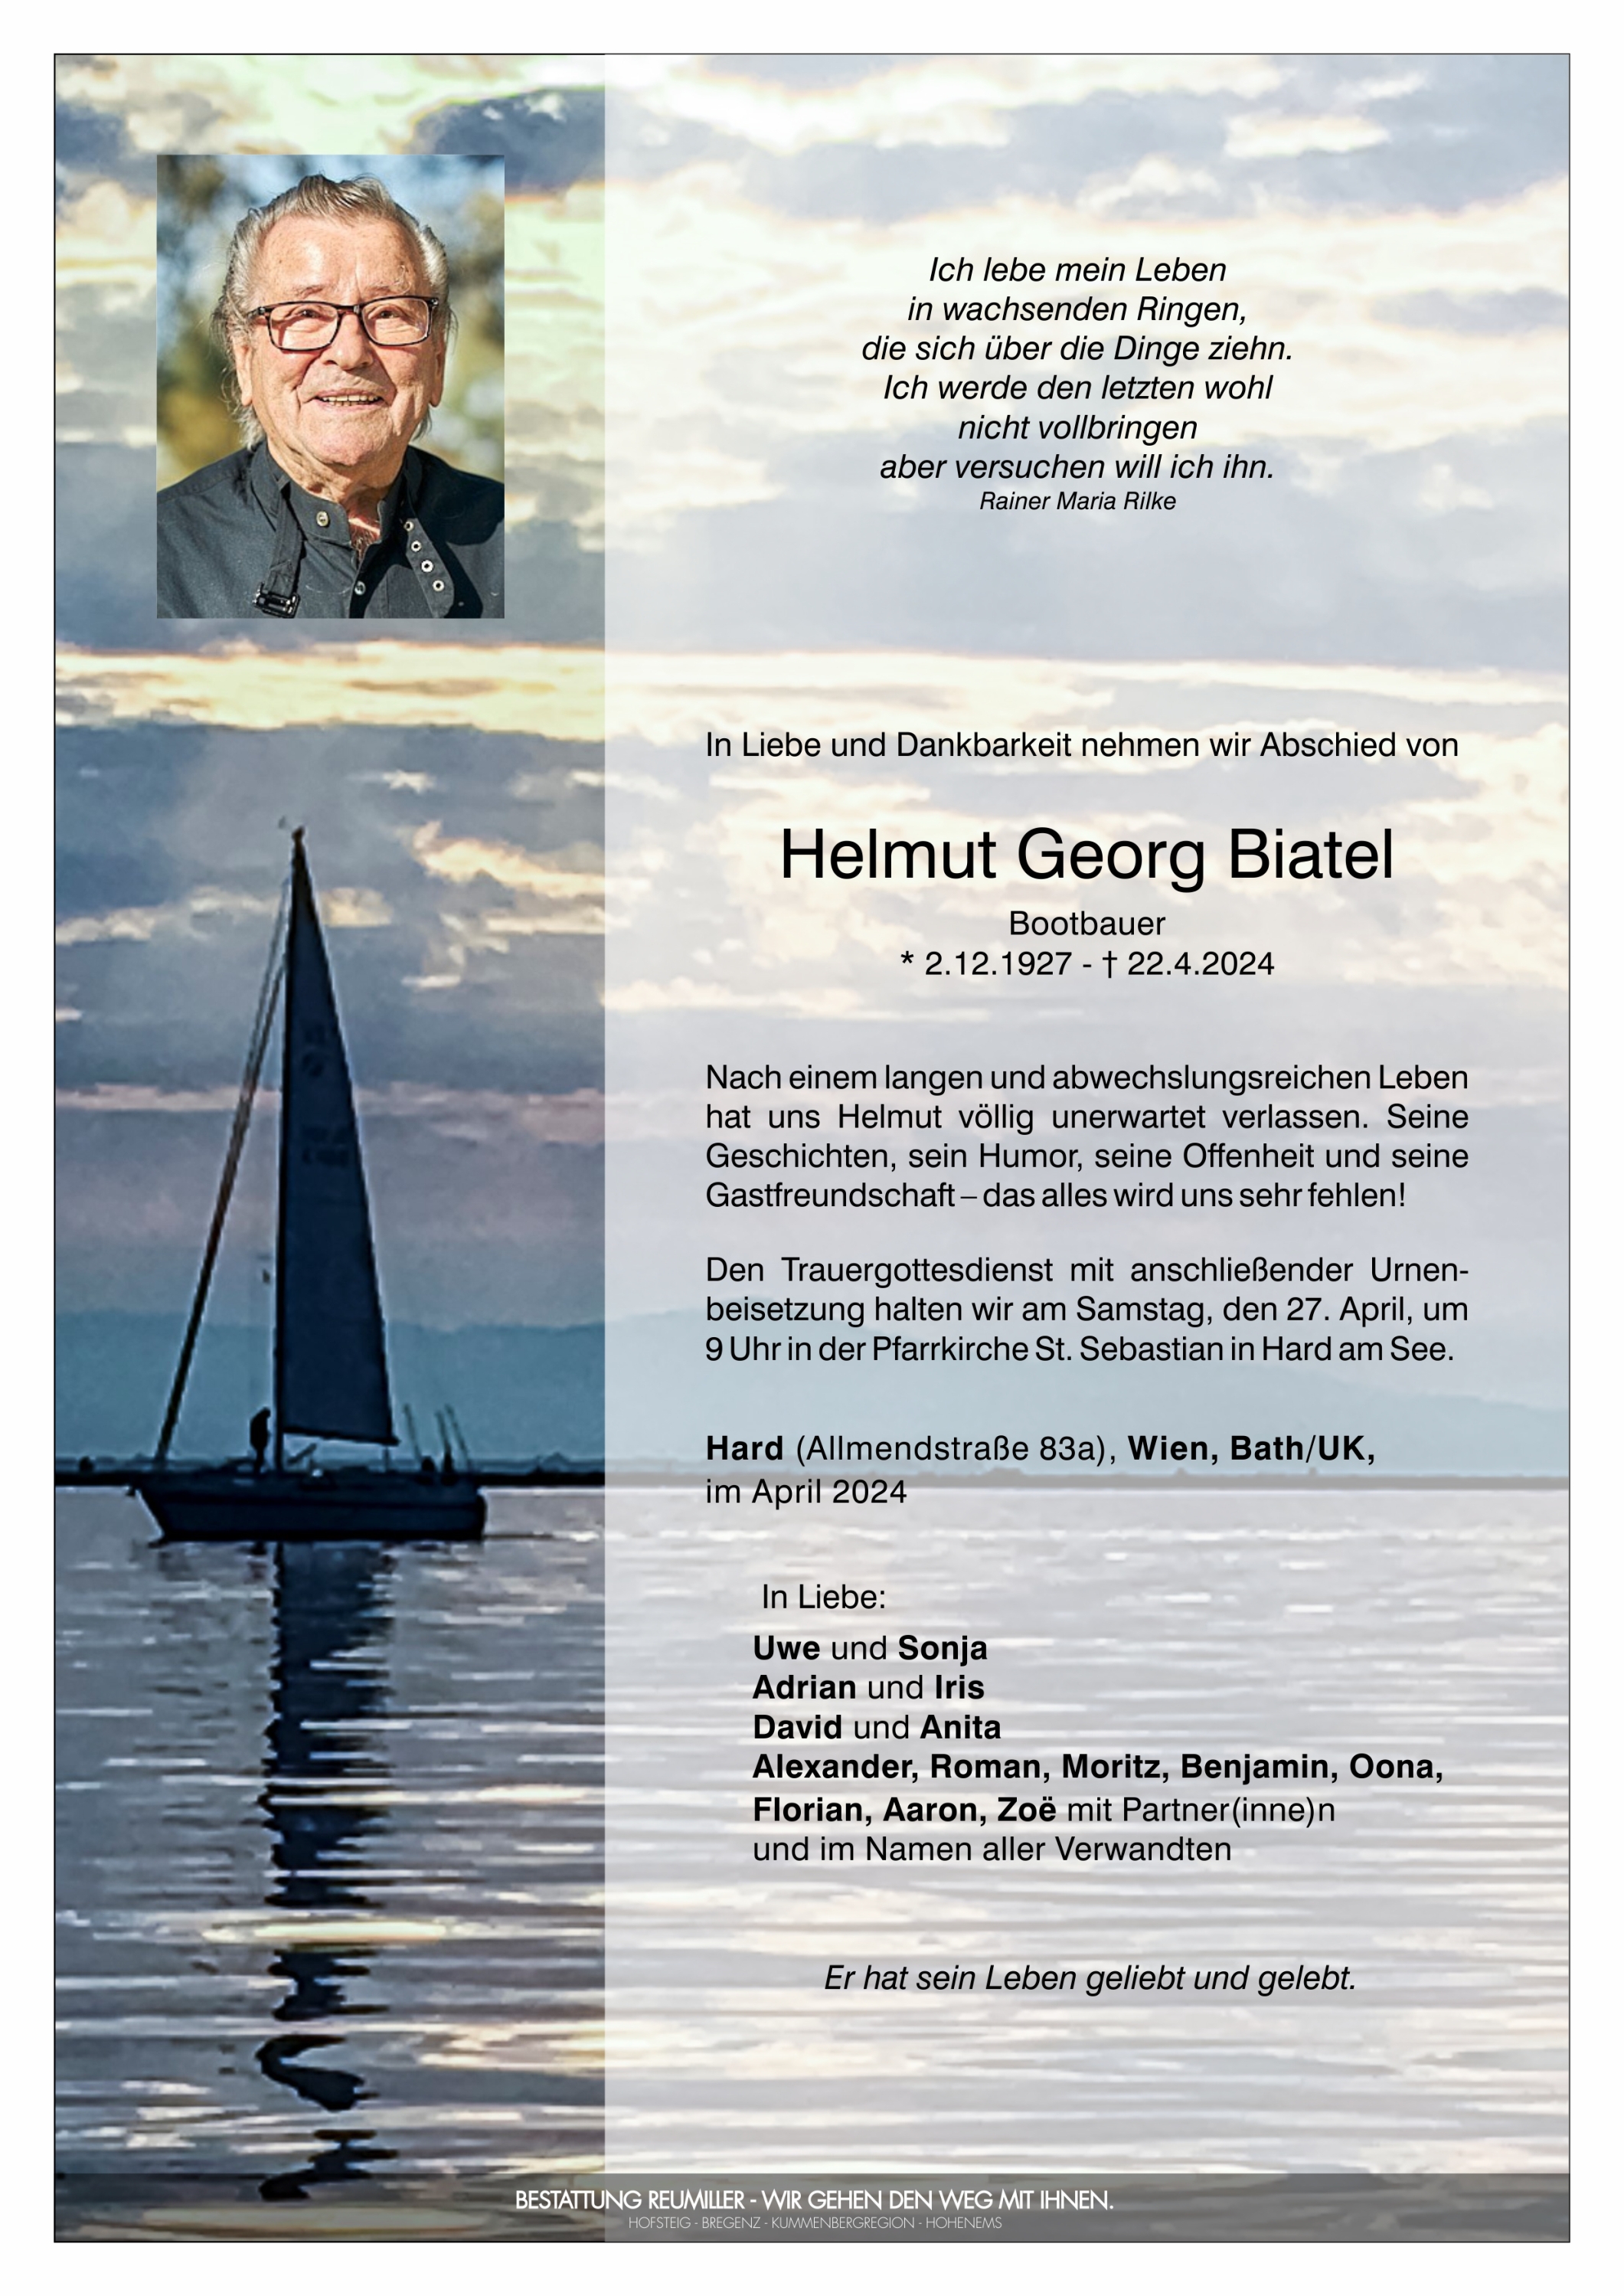 Helmut Georg Biatel